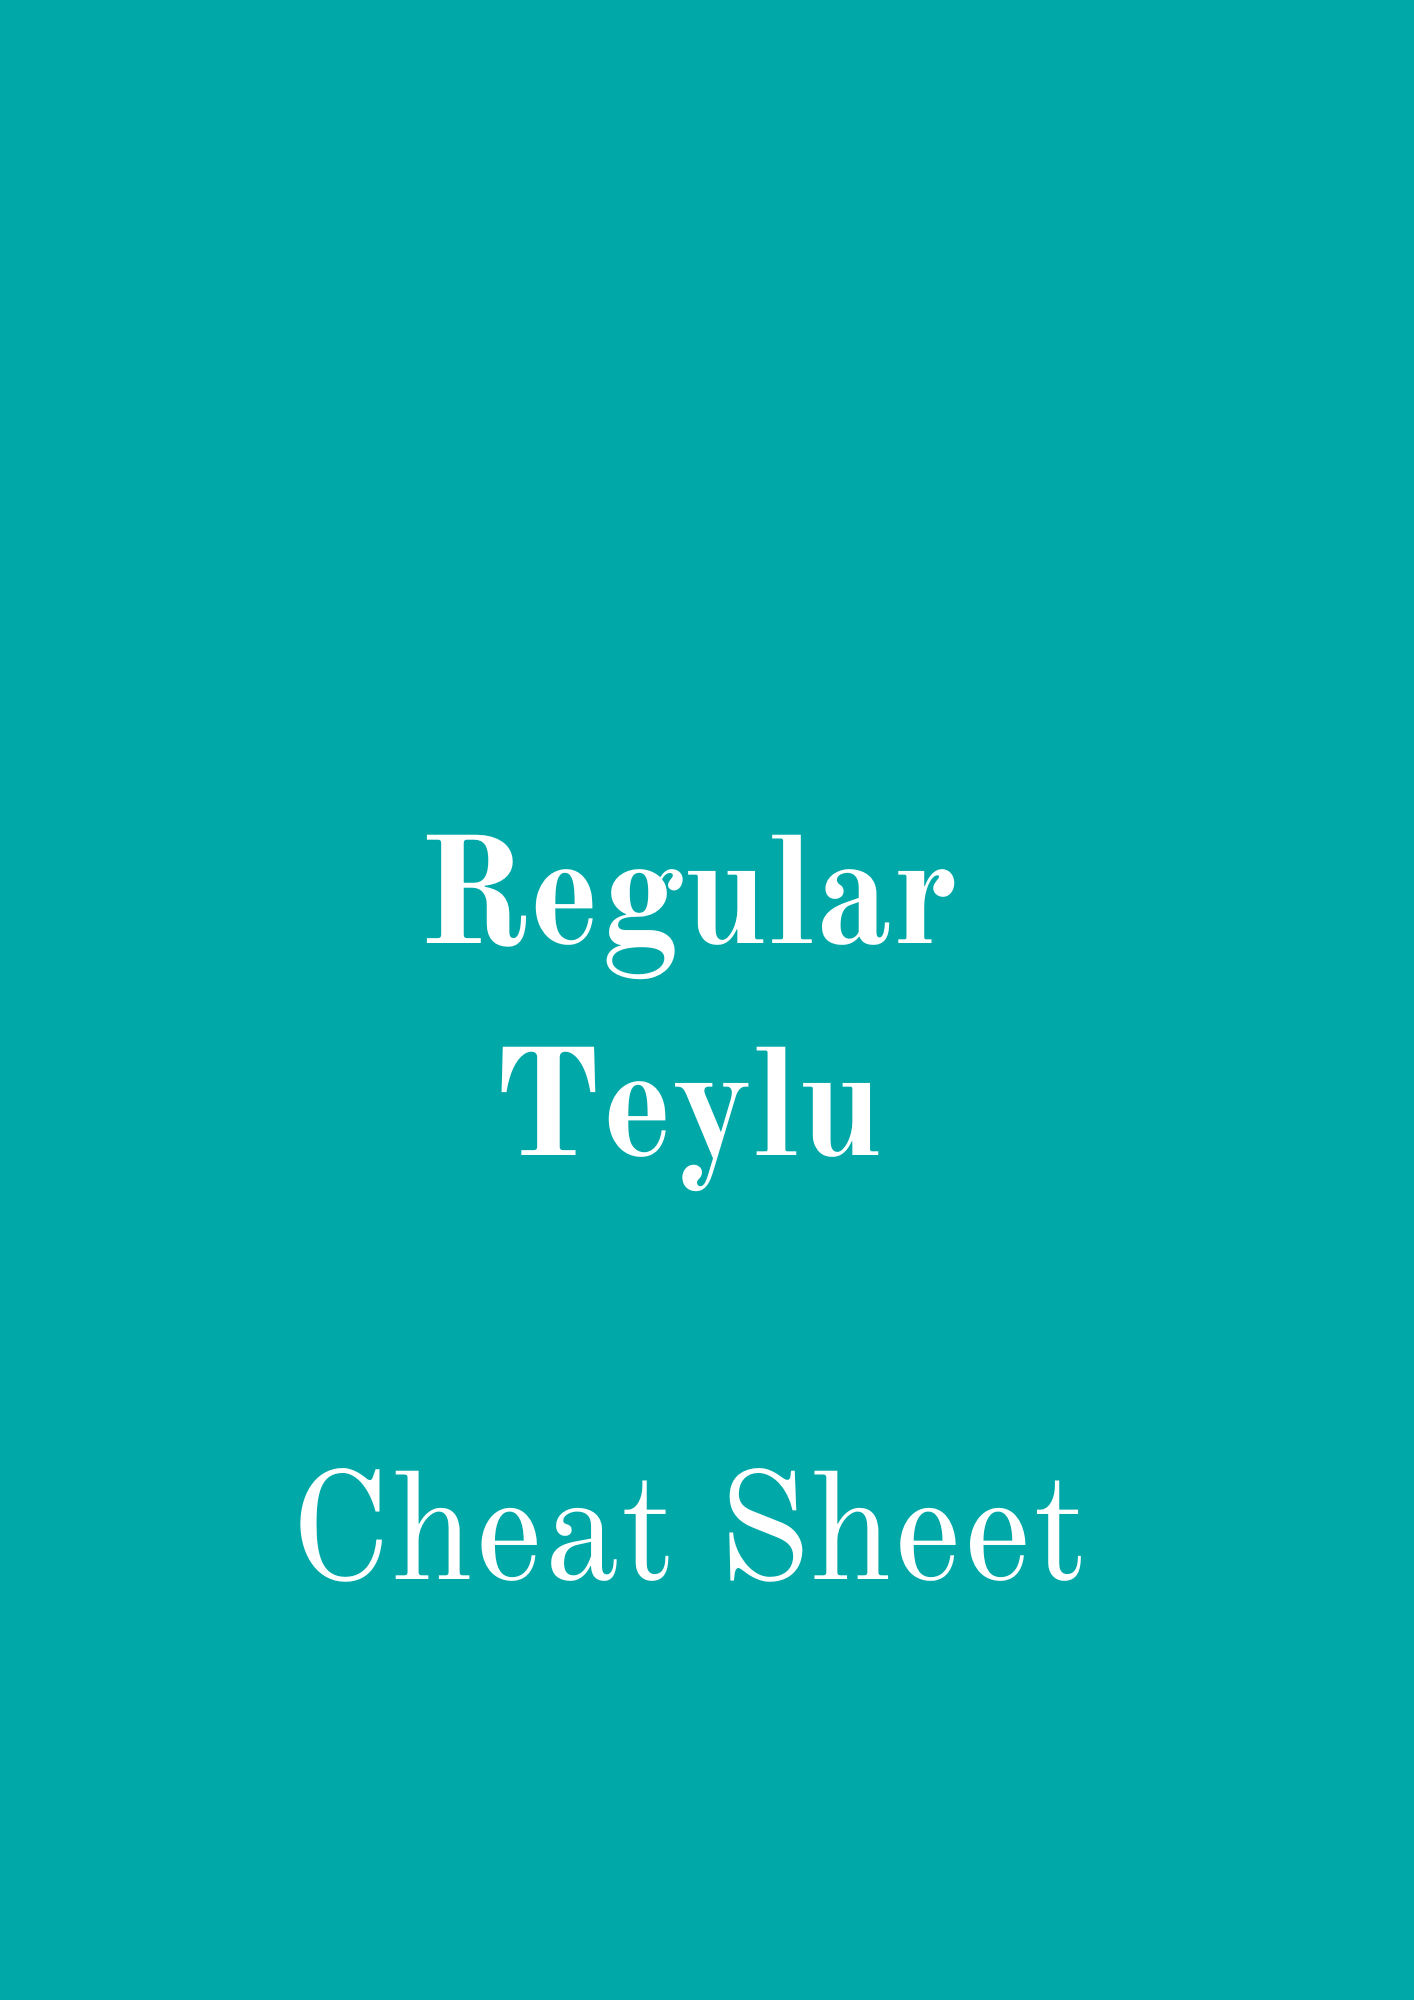 Regular Teylu - Cheat Sheet